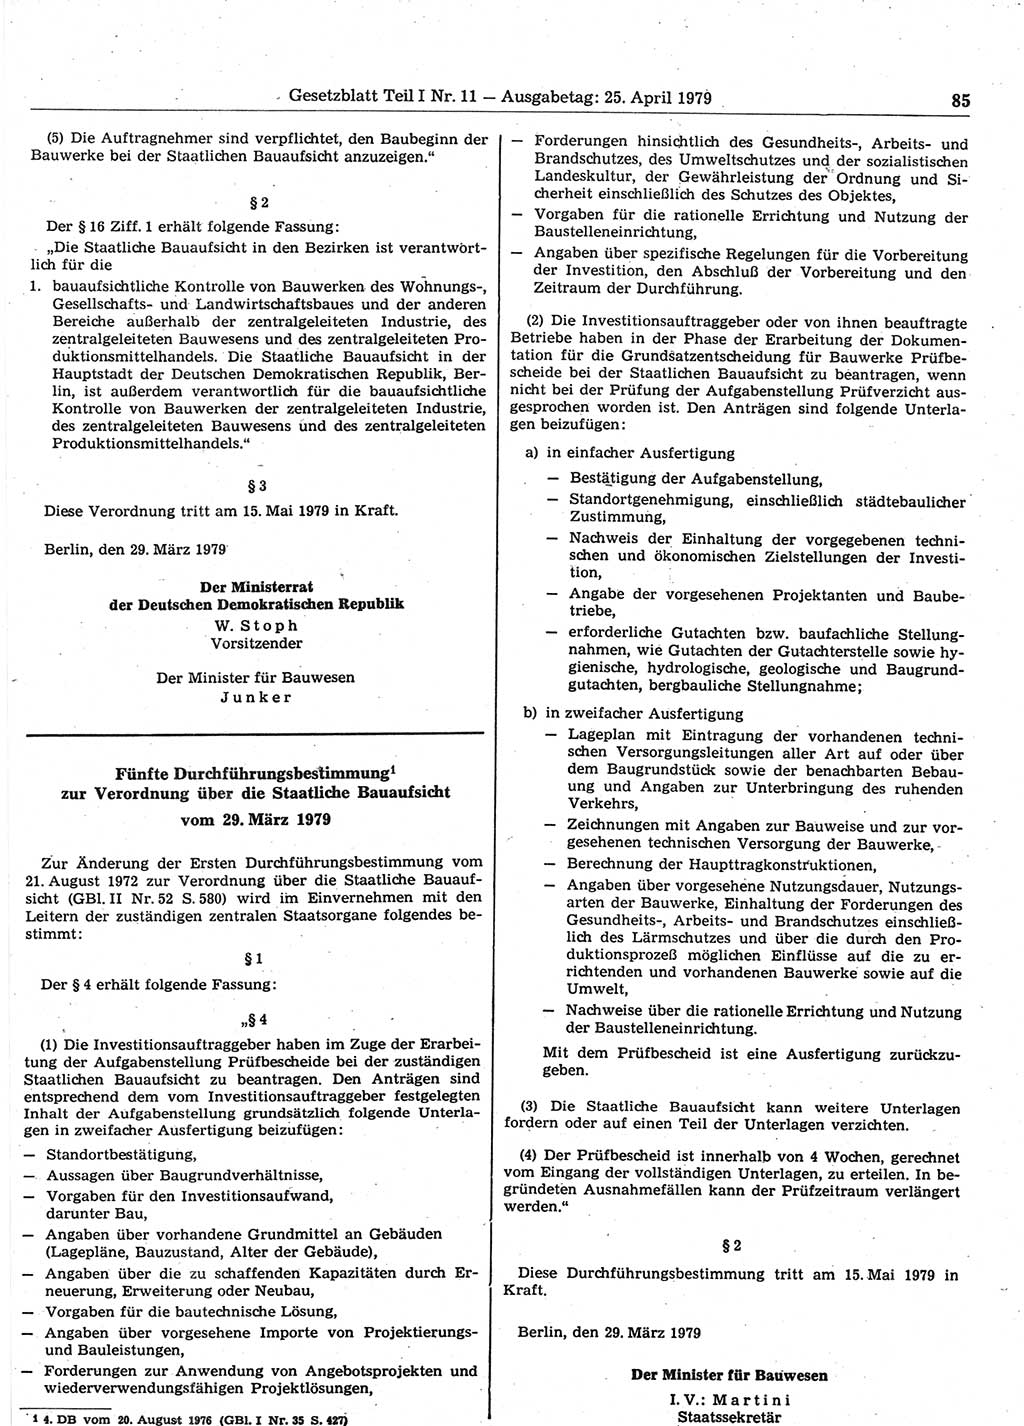 Gesetzblatt (GBl.) der Deutschen Demokratischen Republik (DDR) Teil Ⅰ 1979, Seite 85 (GBl. DDR Ⅰ 1979, S. 85)